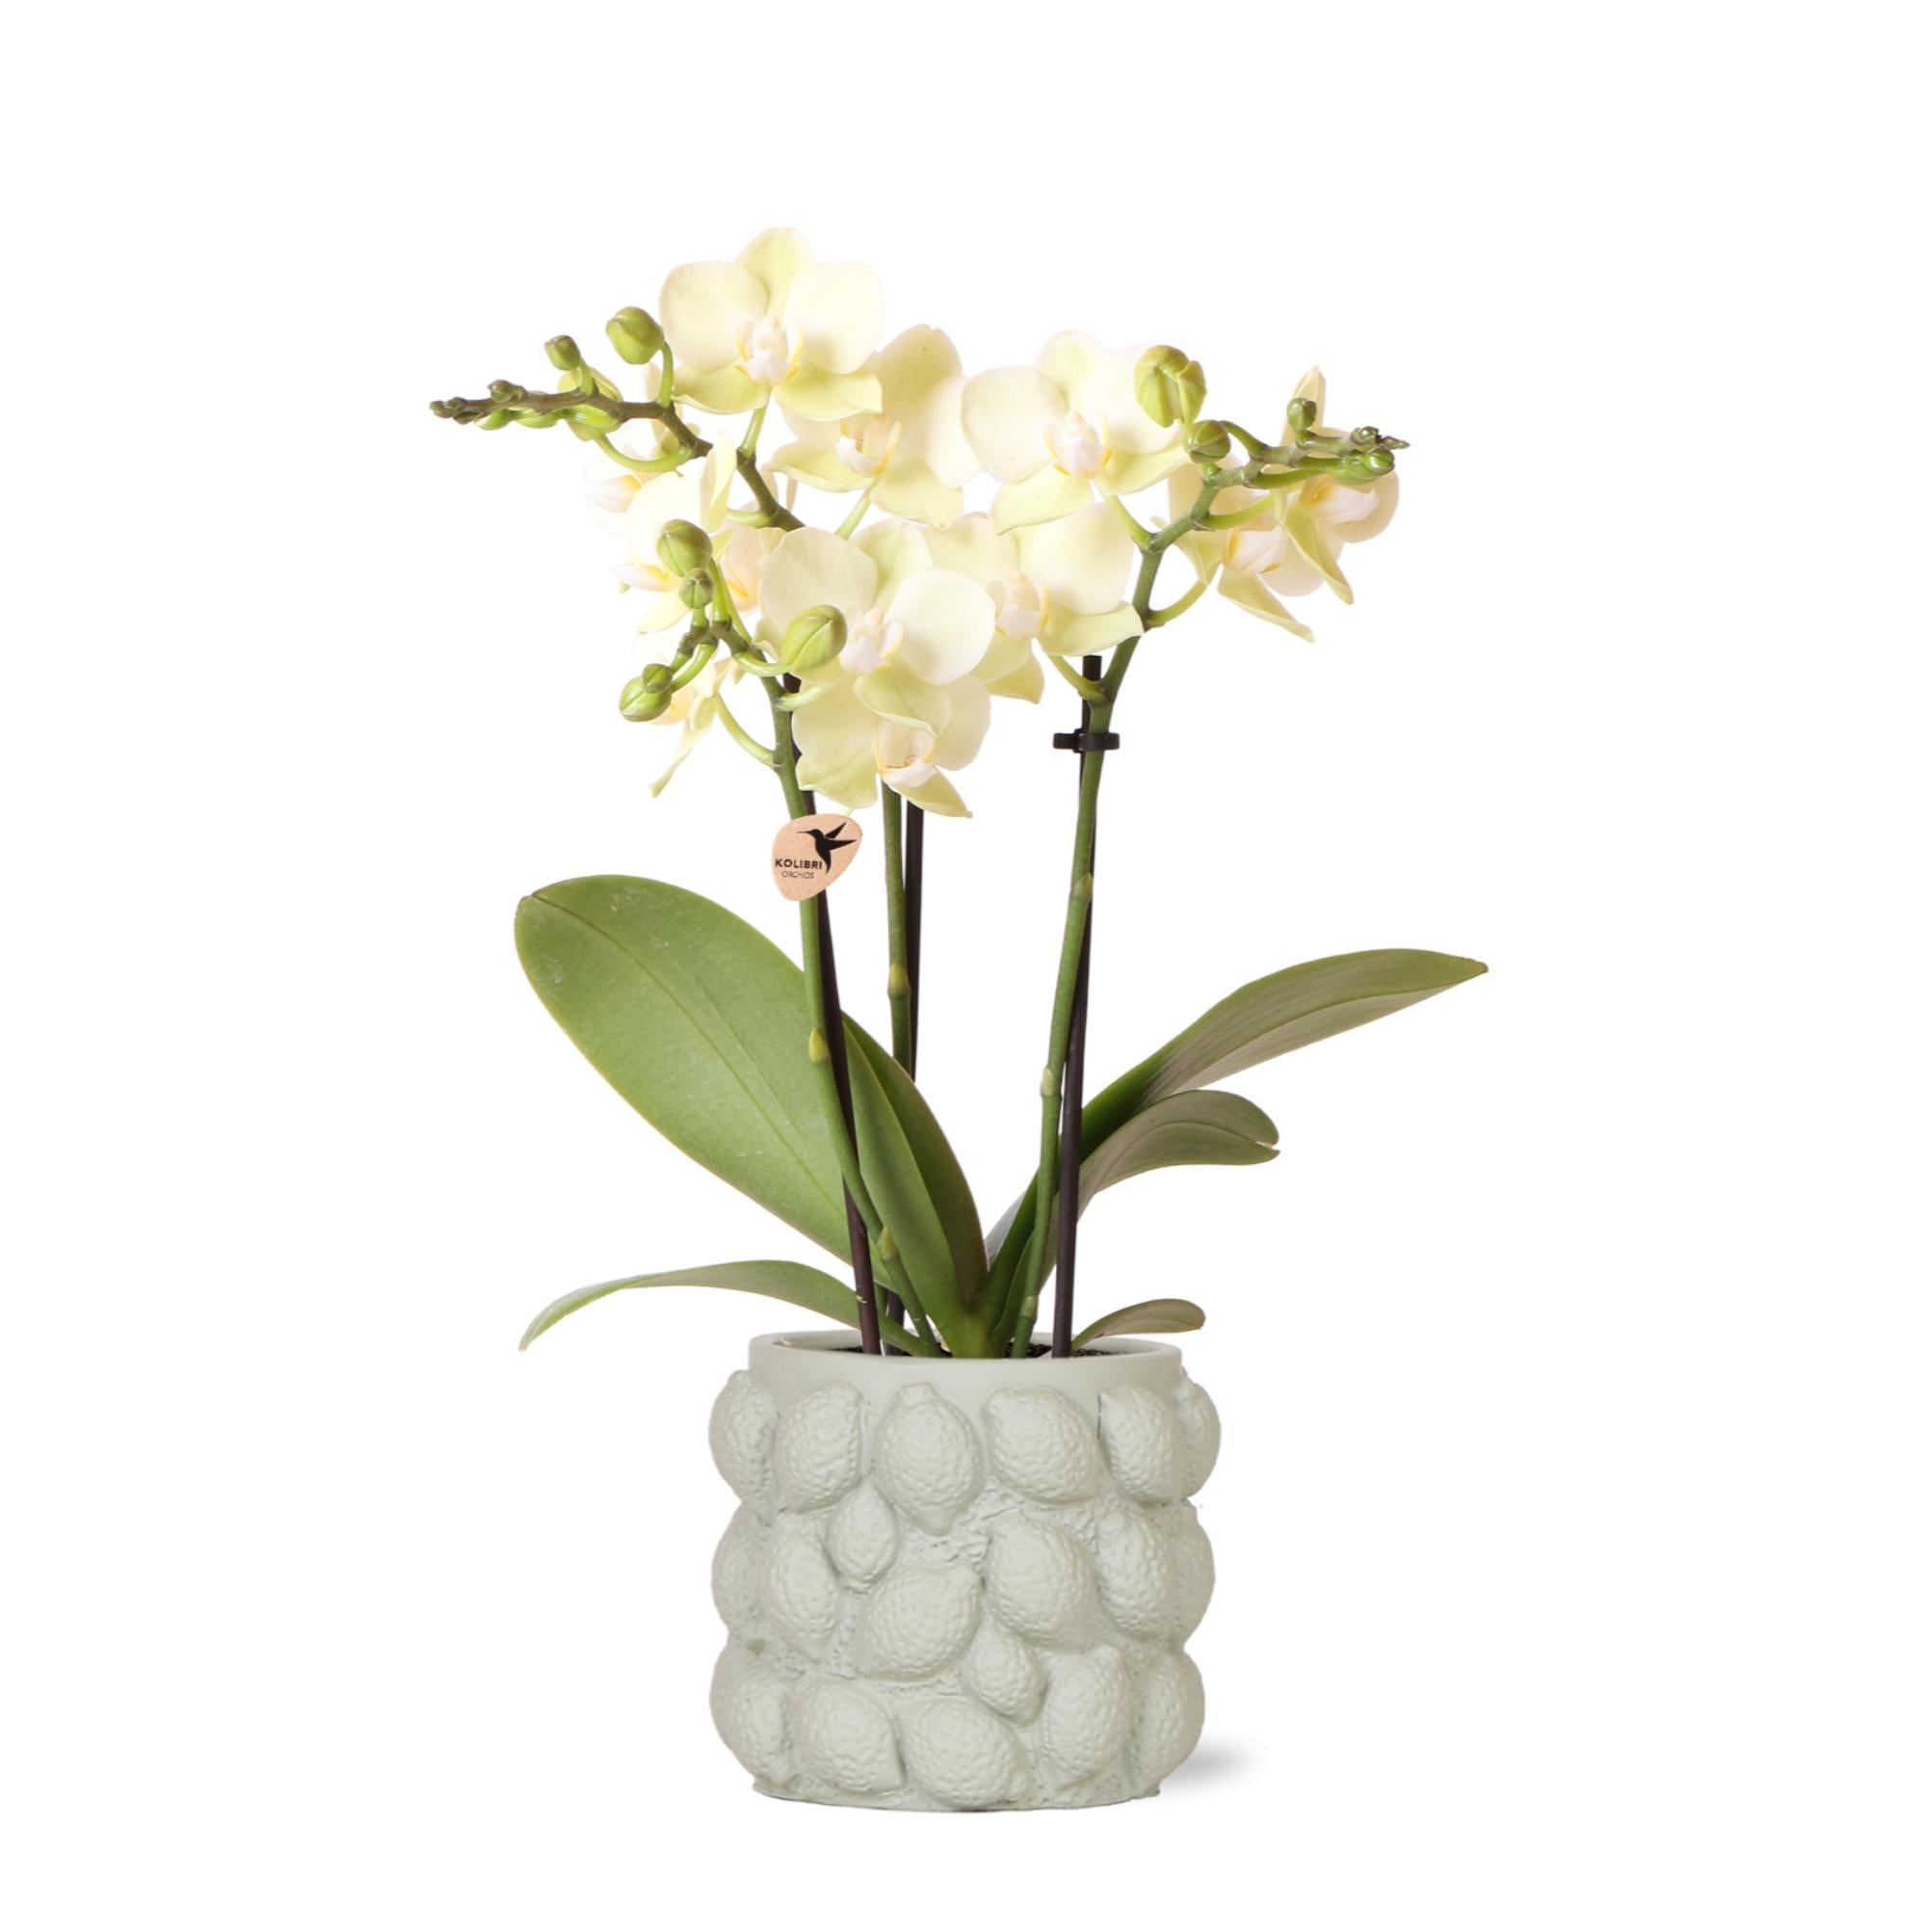 Kolibri Orchids - orchidée phalaenopsis jaune - Mexique + pot décoratif vert citrus - taille de pot 9cm - hauteur 40cm - plante d'intérieur fleurie